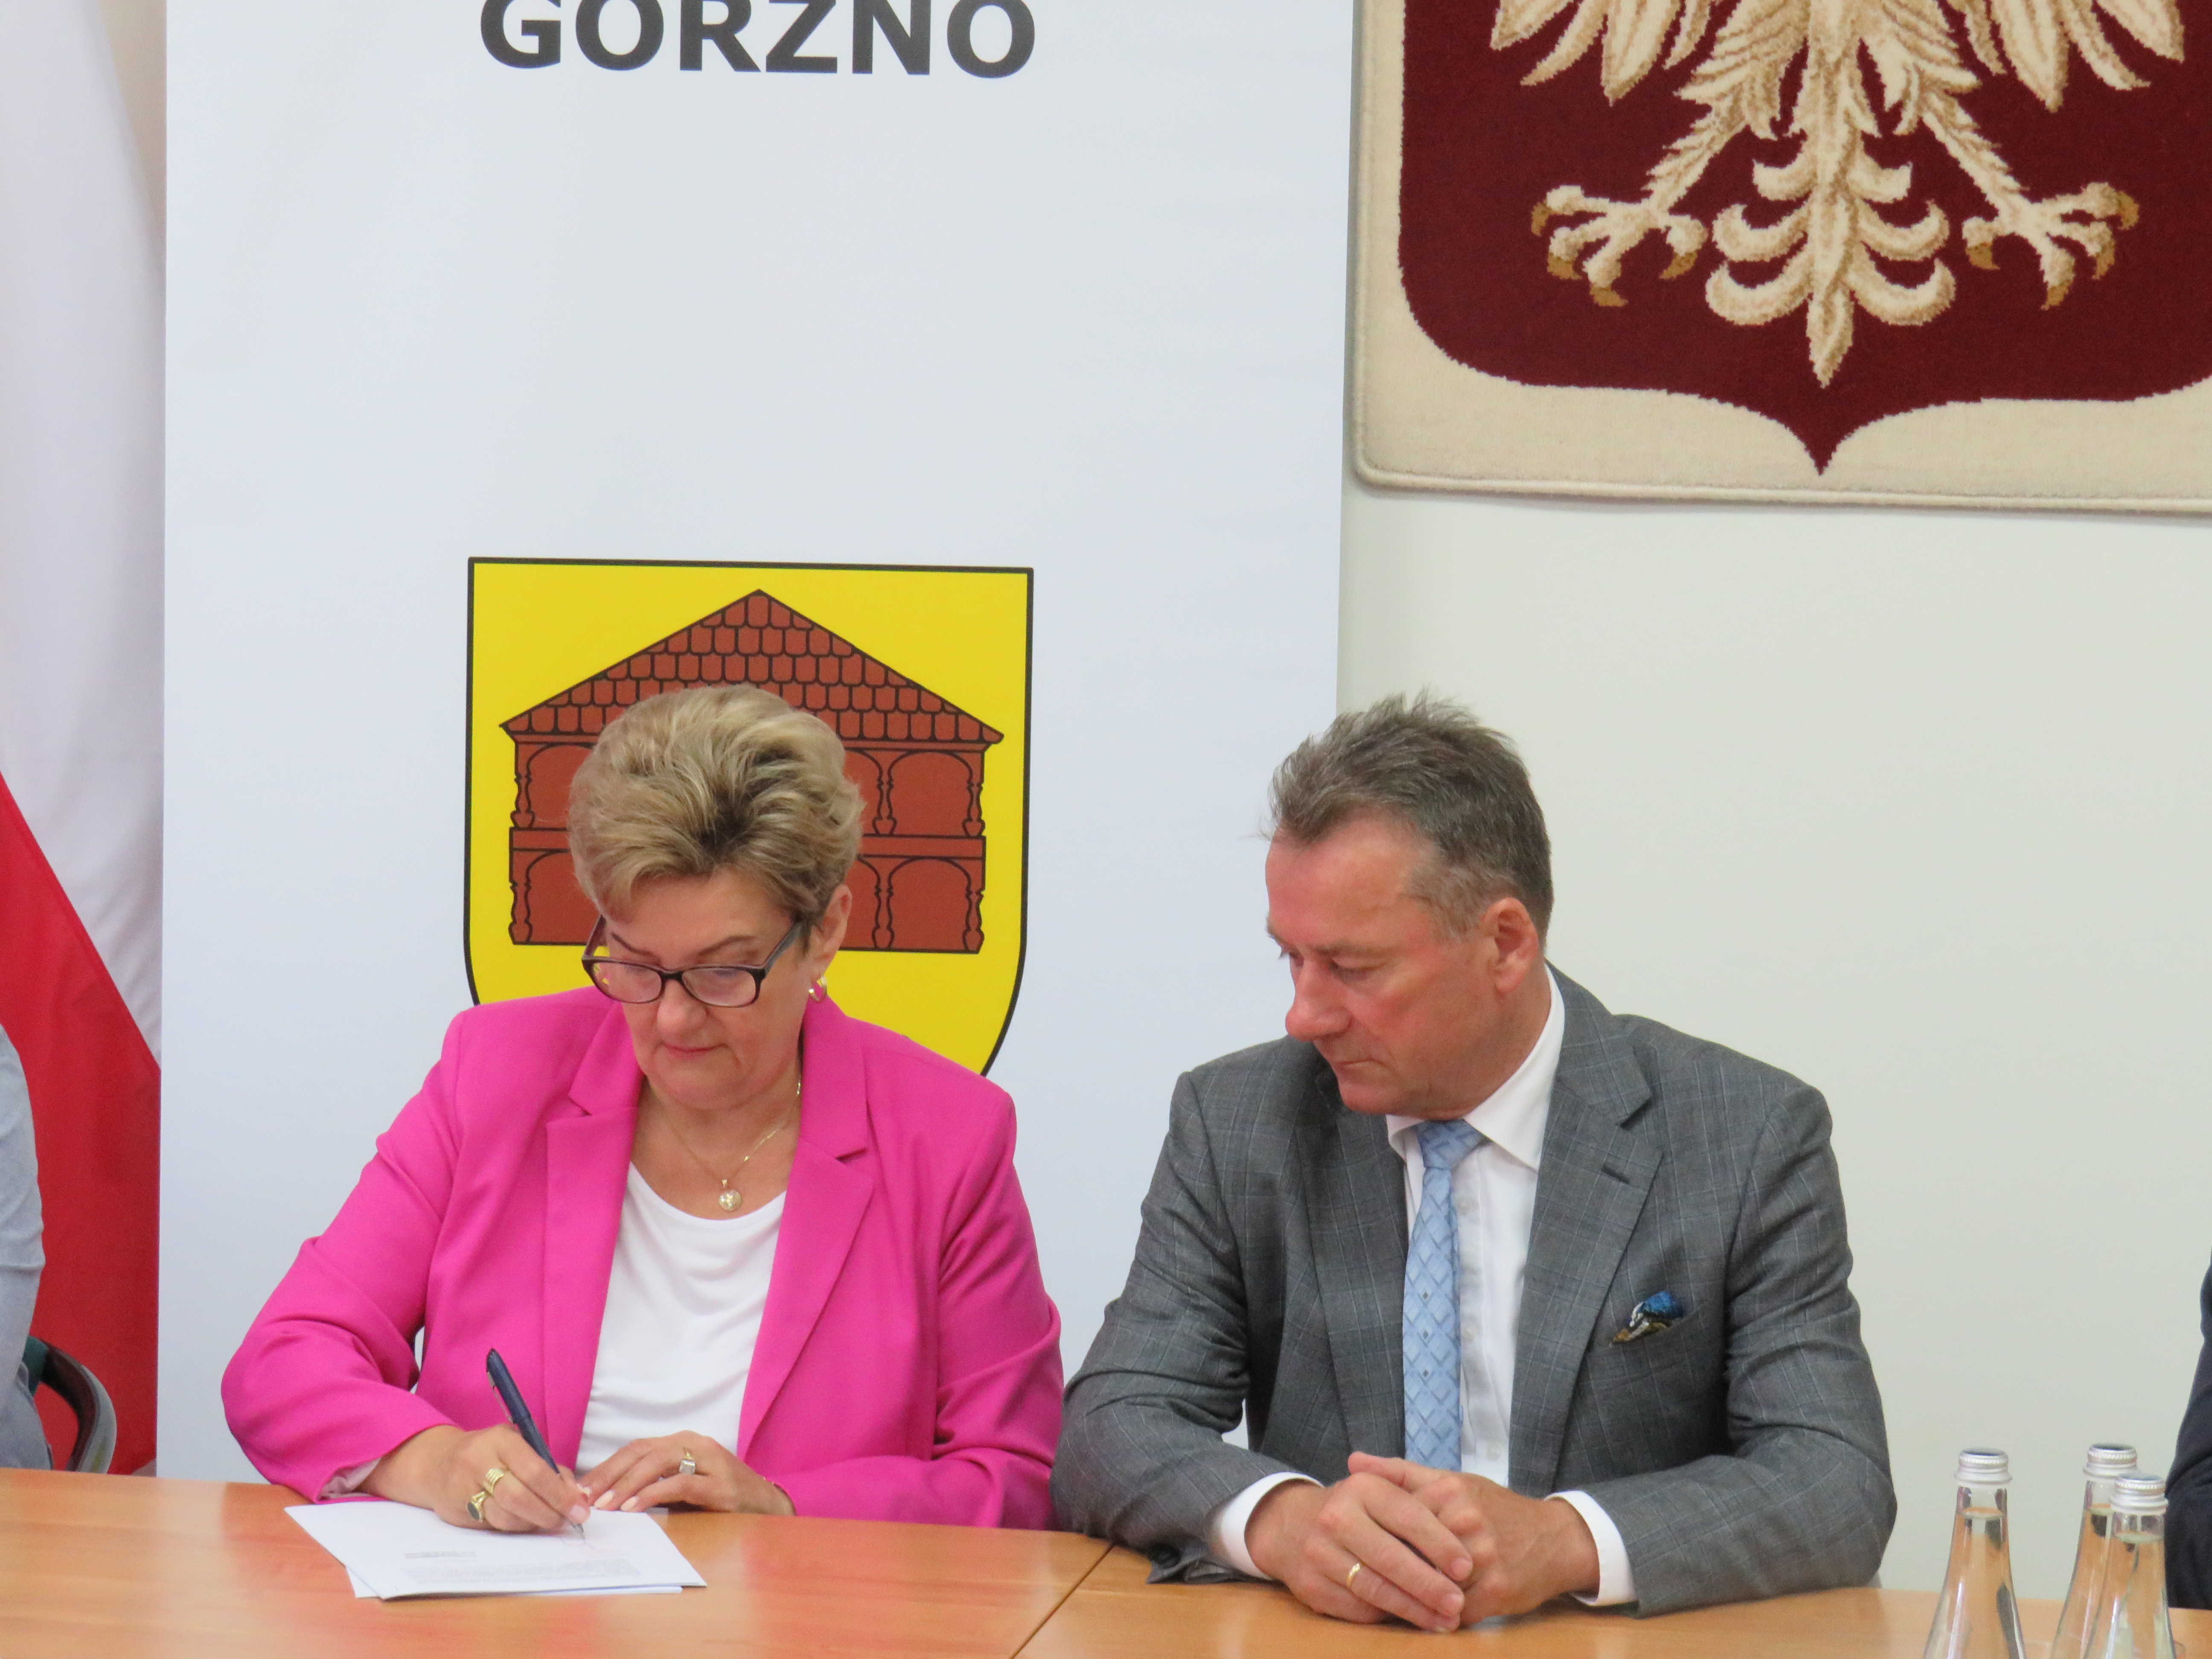 Podpisanie umowy na rozbudowę Przedszkola w Górznie przez skarbnika gminy Panią Grażynę Szewczyk